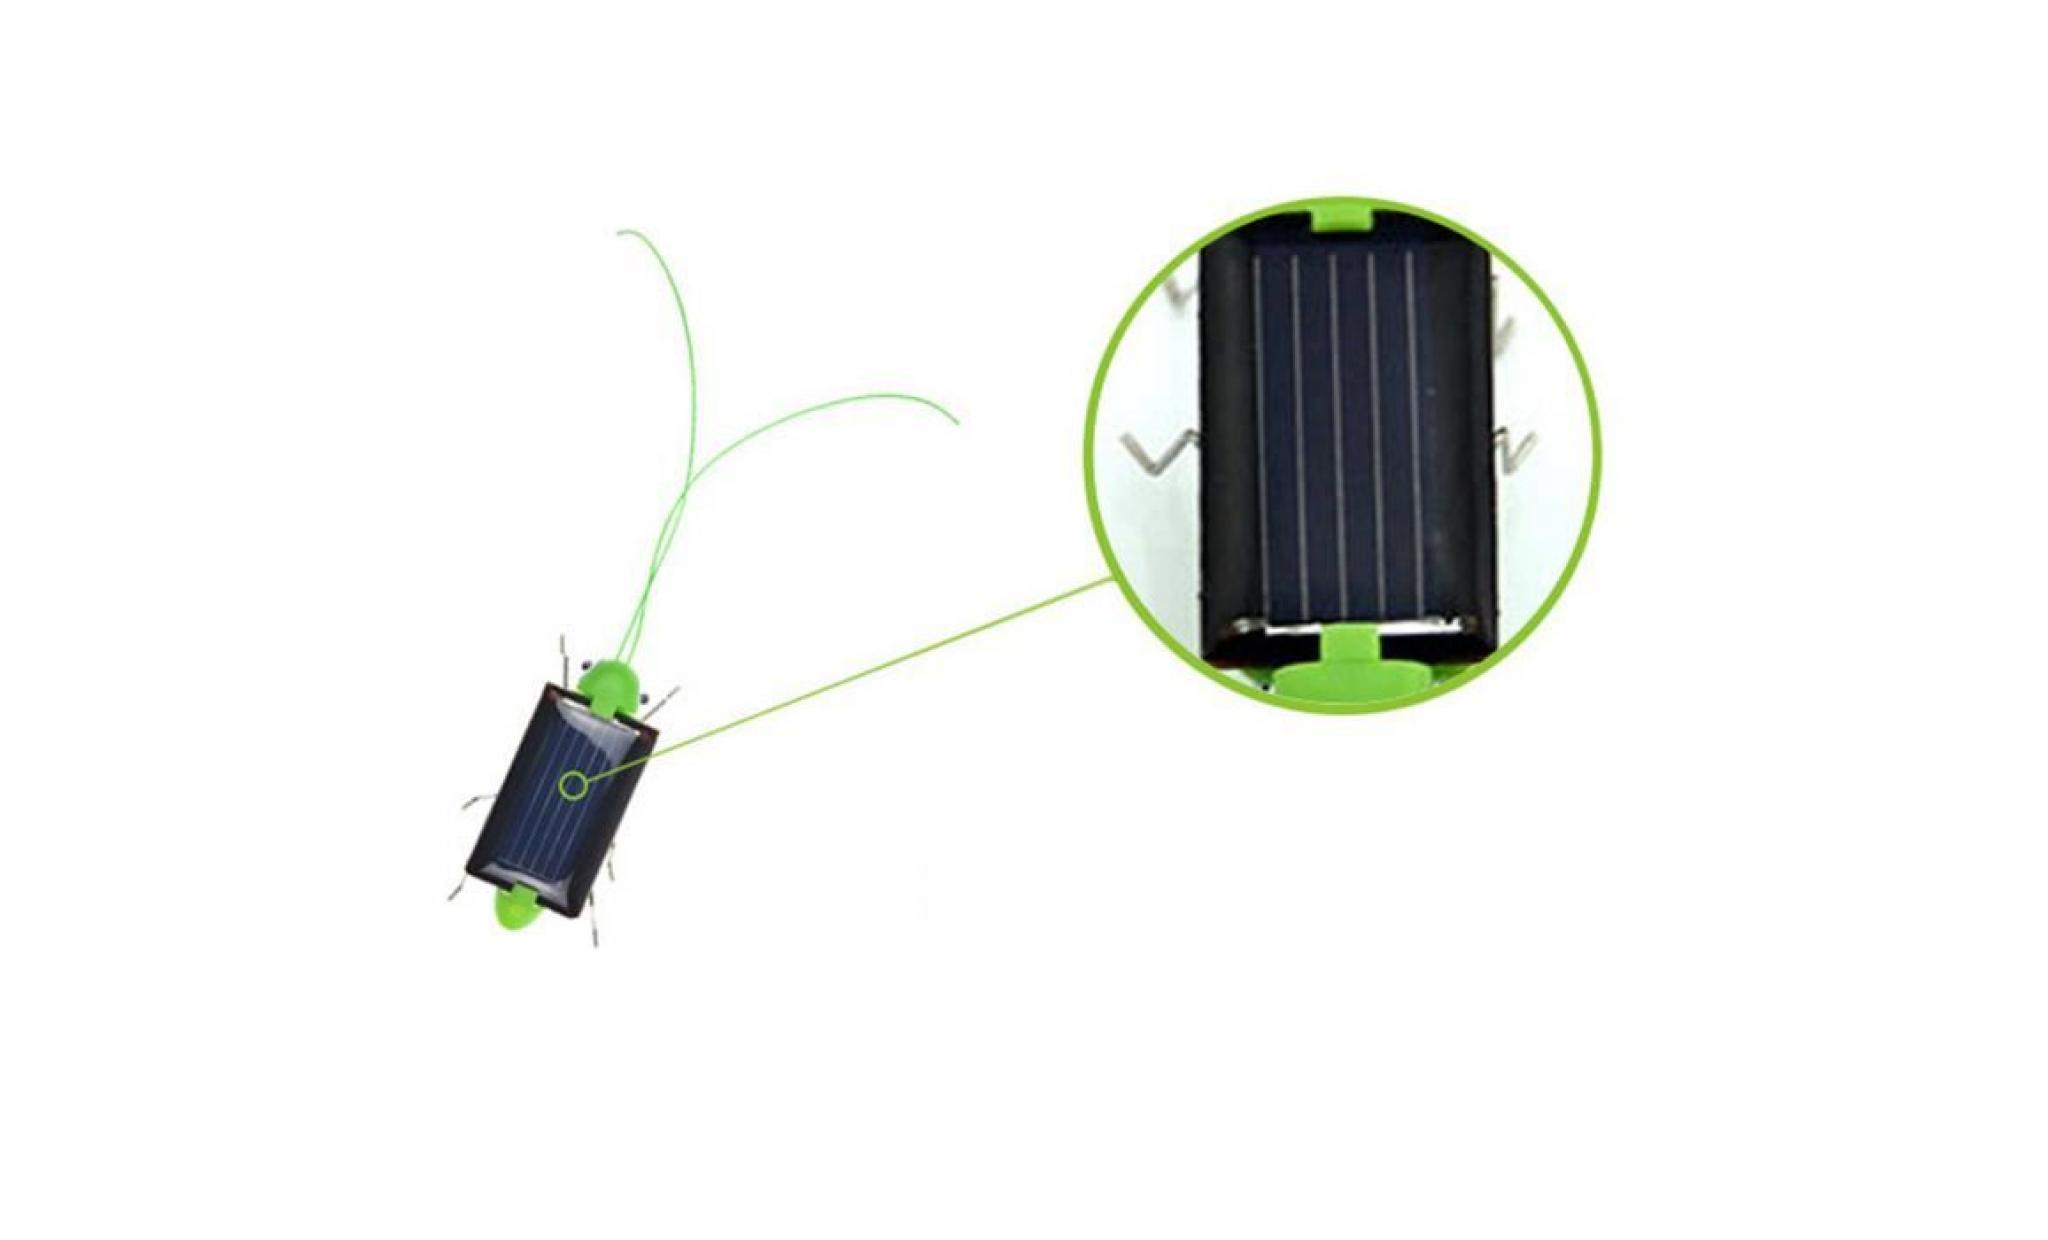 mosakog® Éducation à énergie solaire grasshopper robot jouet solaire gadget jouet cadeau liy71208005 pas cher